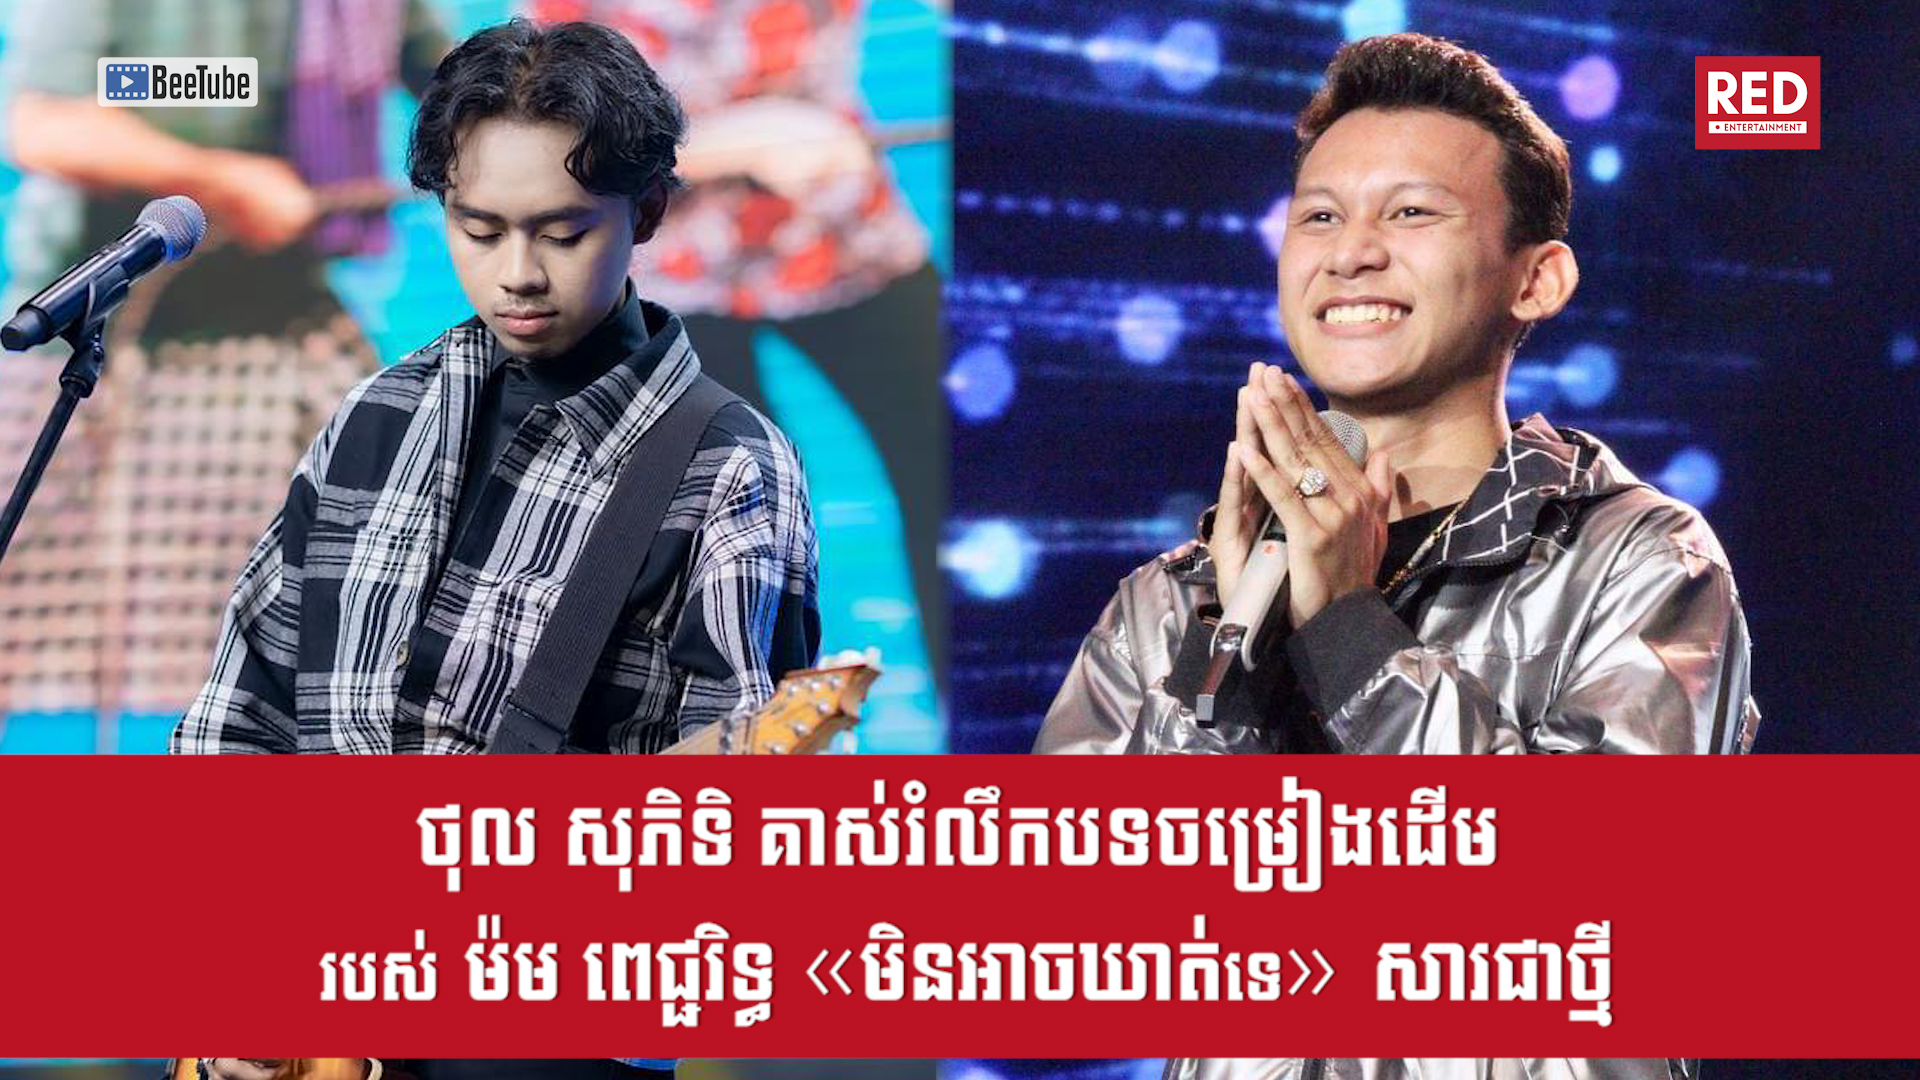 បេក្ខជន Cambodian Idol ថុល សុភិទិ គាស់រំលឹកបទចម្រៀងដើម របស់ ម៉ម ពេជ្ជរិទ្ធ "មិនអាចឃាត់ទេ" សារជាថ្មីនៅវគ្គ Live Show